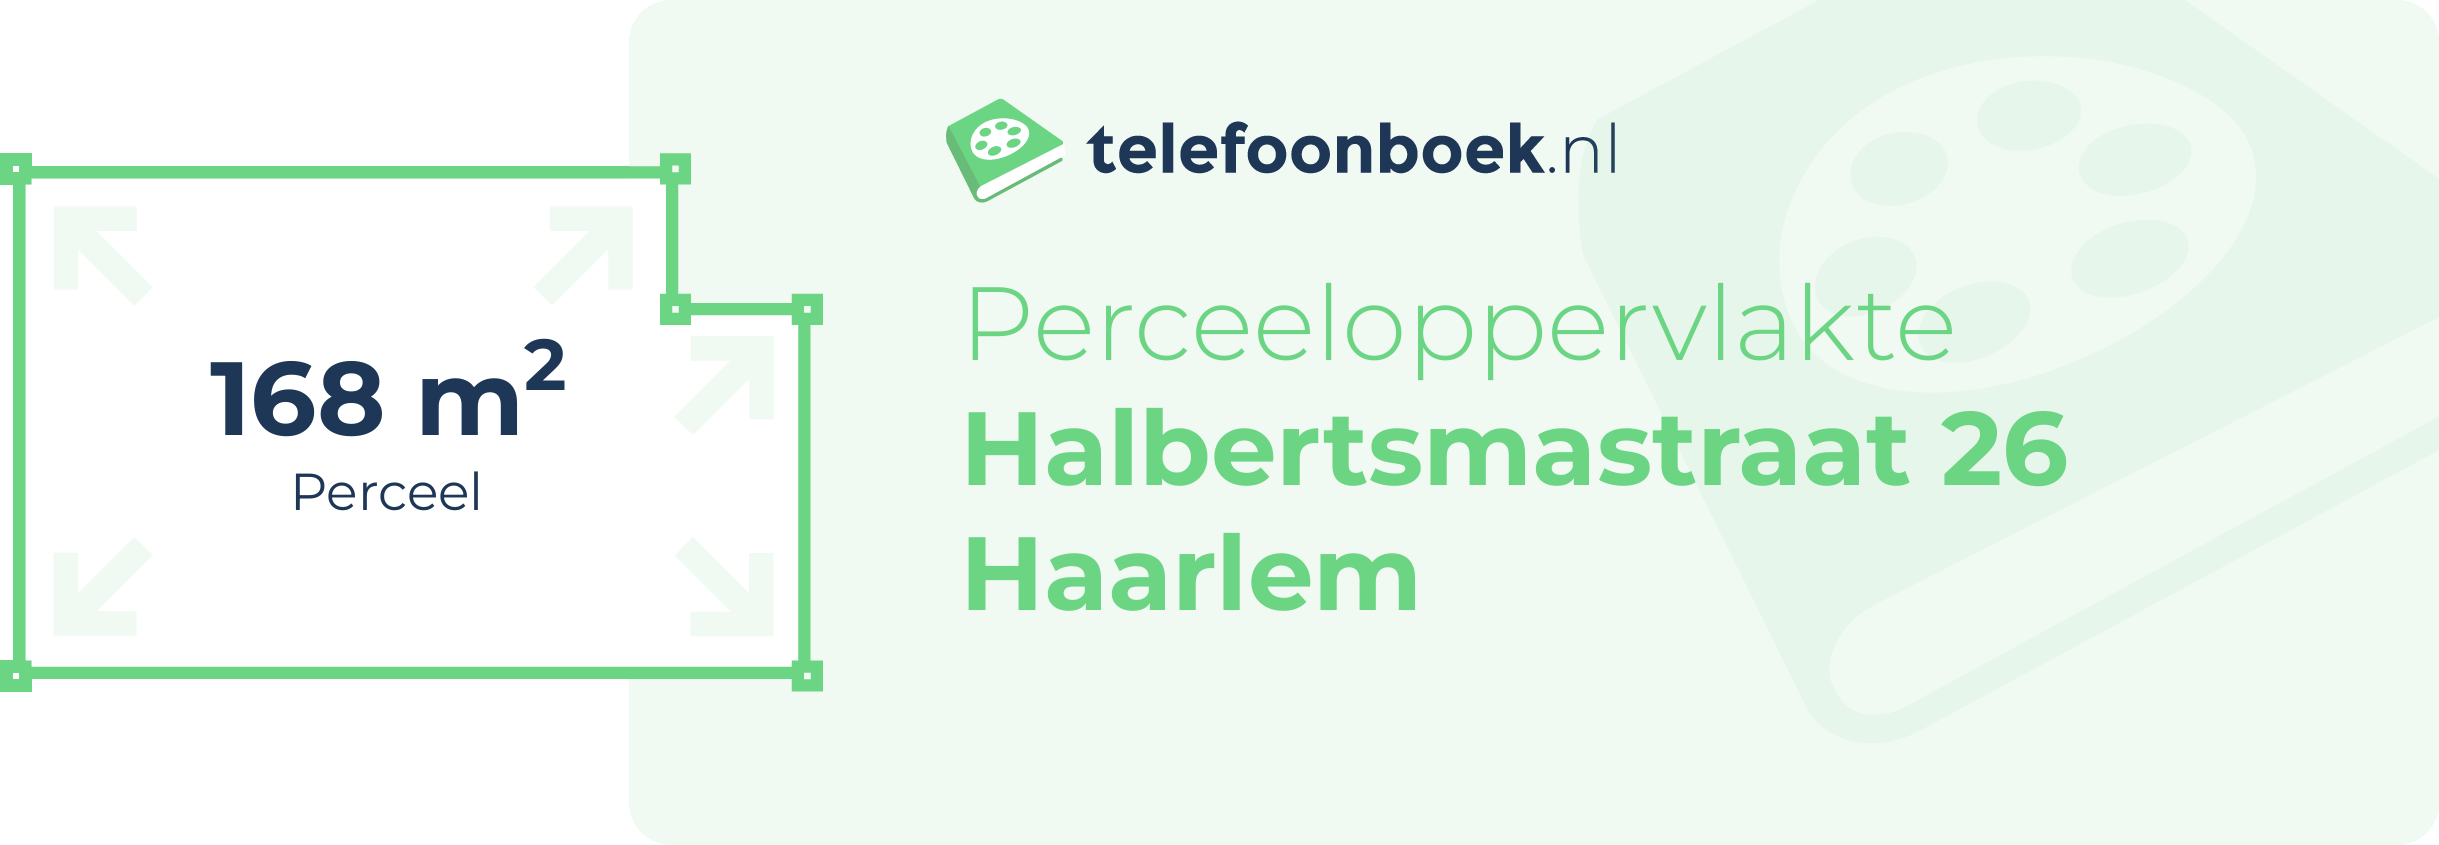 Perceeloppervlakte Halbertsmastraat 26 Haarlem